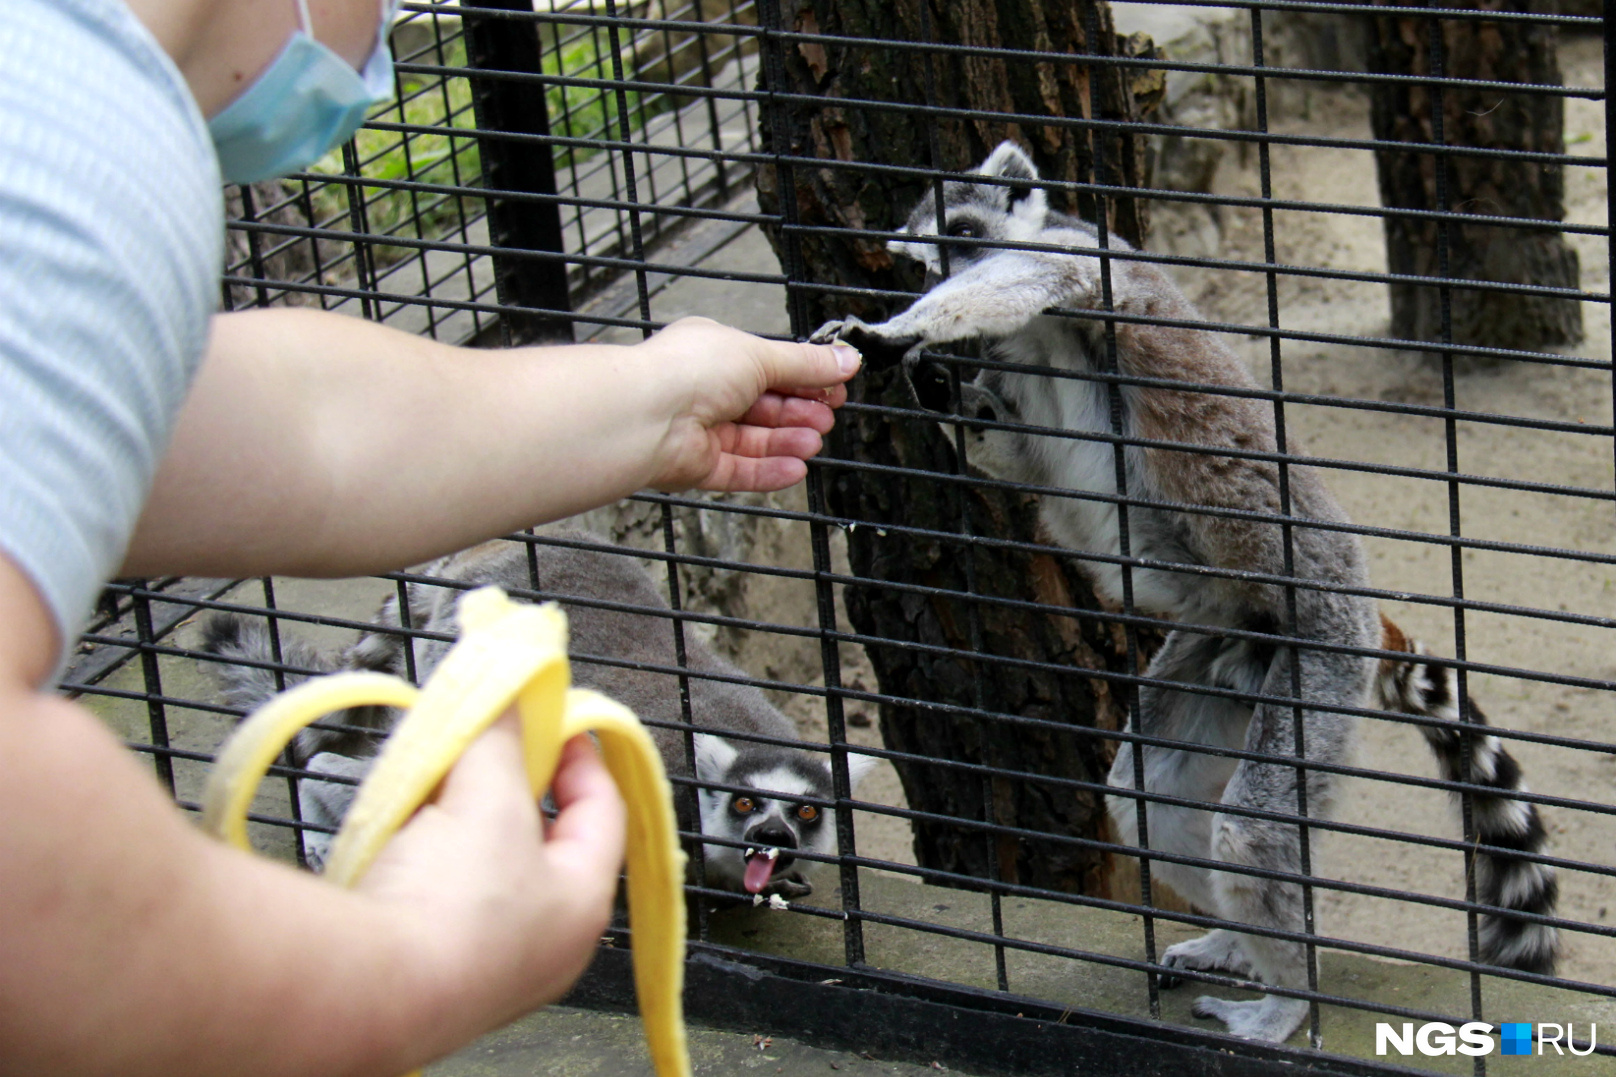 Кормить животных запрещено, но посетители считают, что бананы лемурам точно не повредят